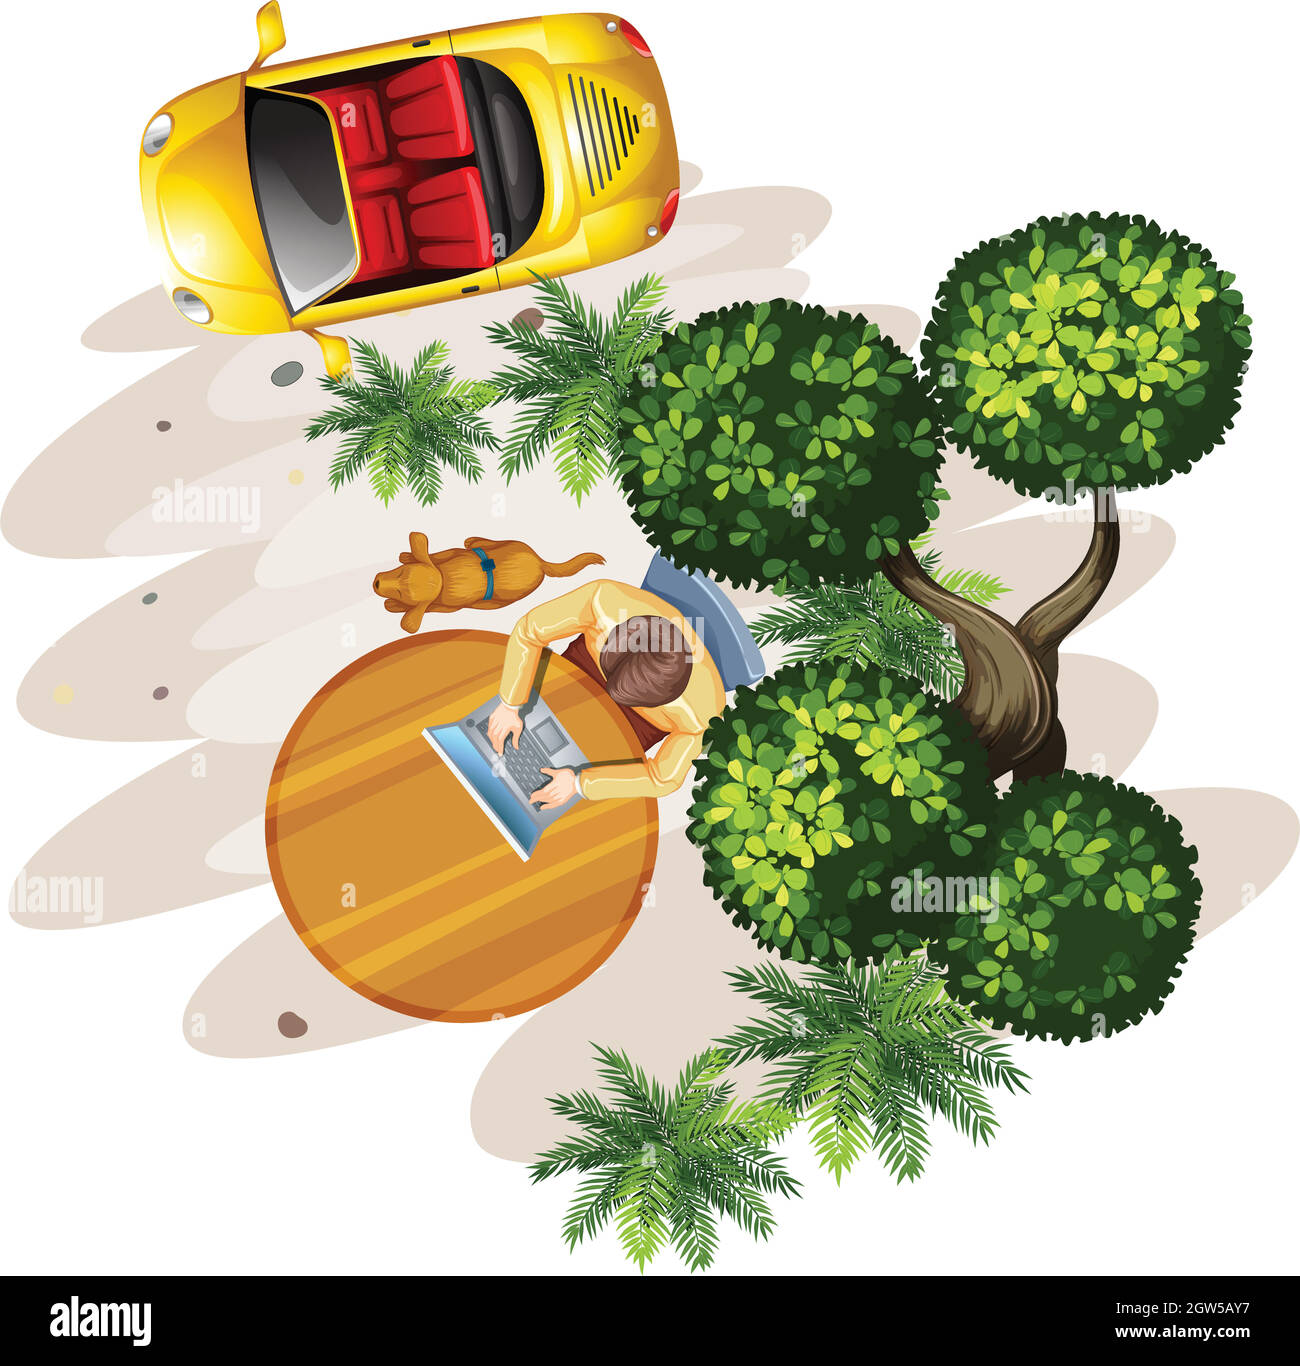 topview eines Tisches mit einem Mann, einem Baum und einem Fahrzeug Stock Vektor